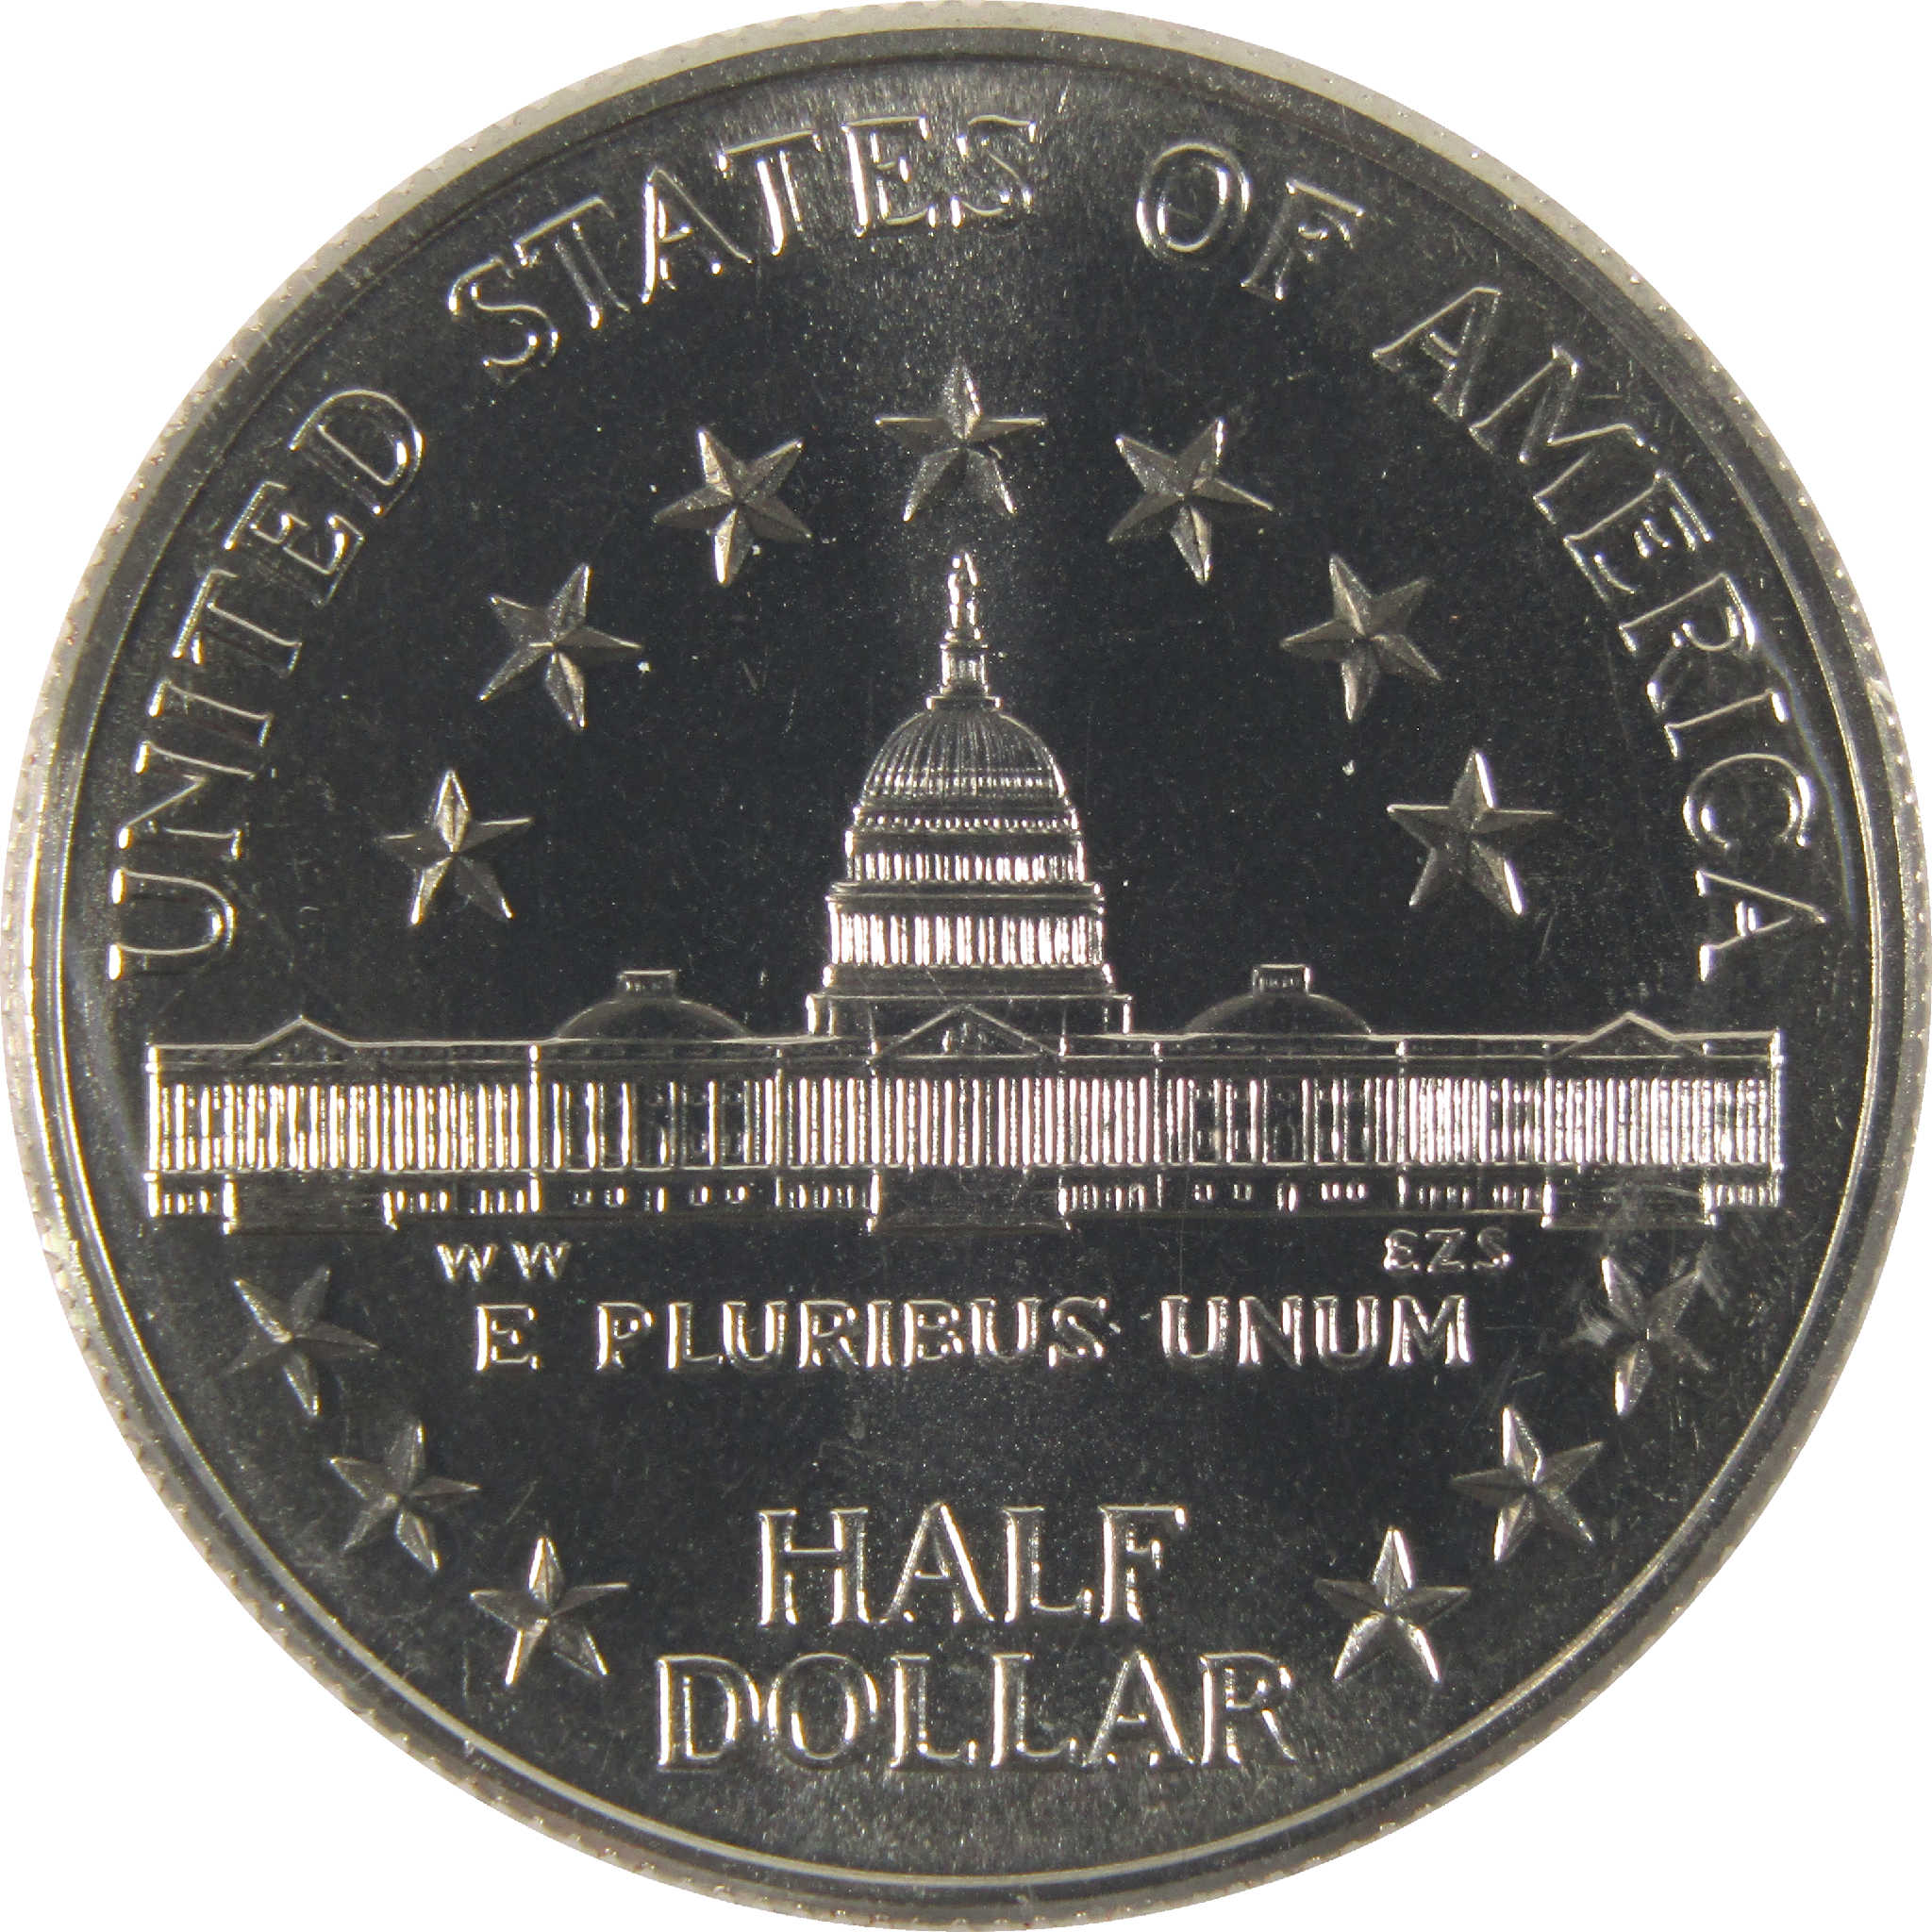 Congress Bicentennial Half Dollar 1989 D Unc Clad OGP COA SKU:CPC6325